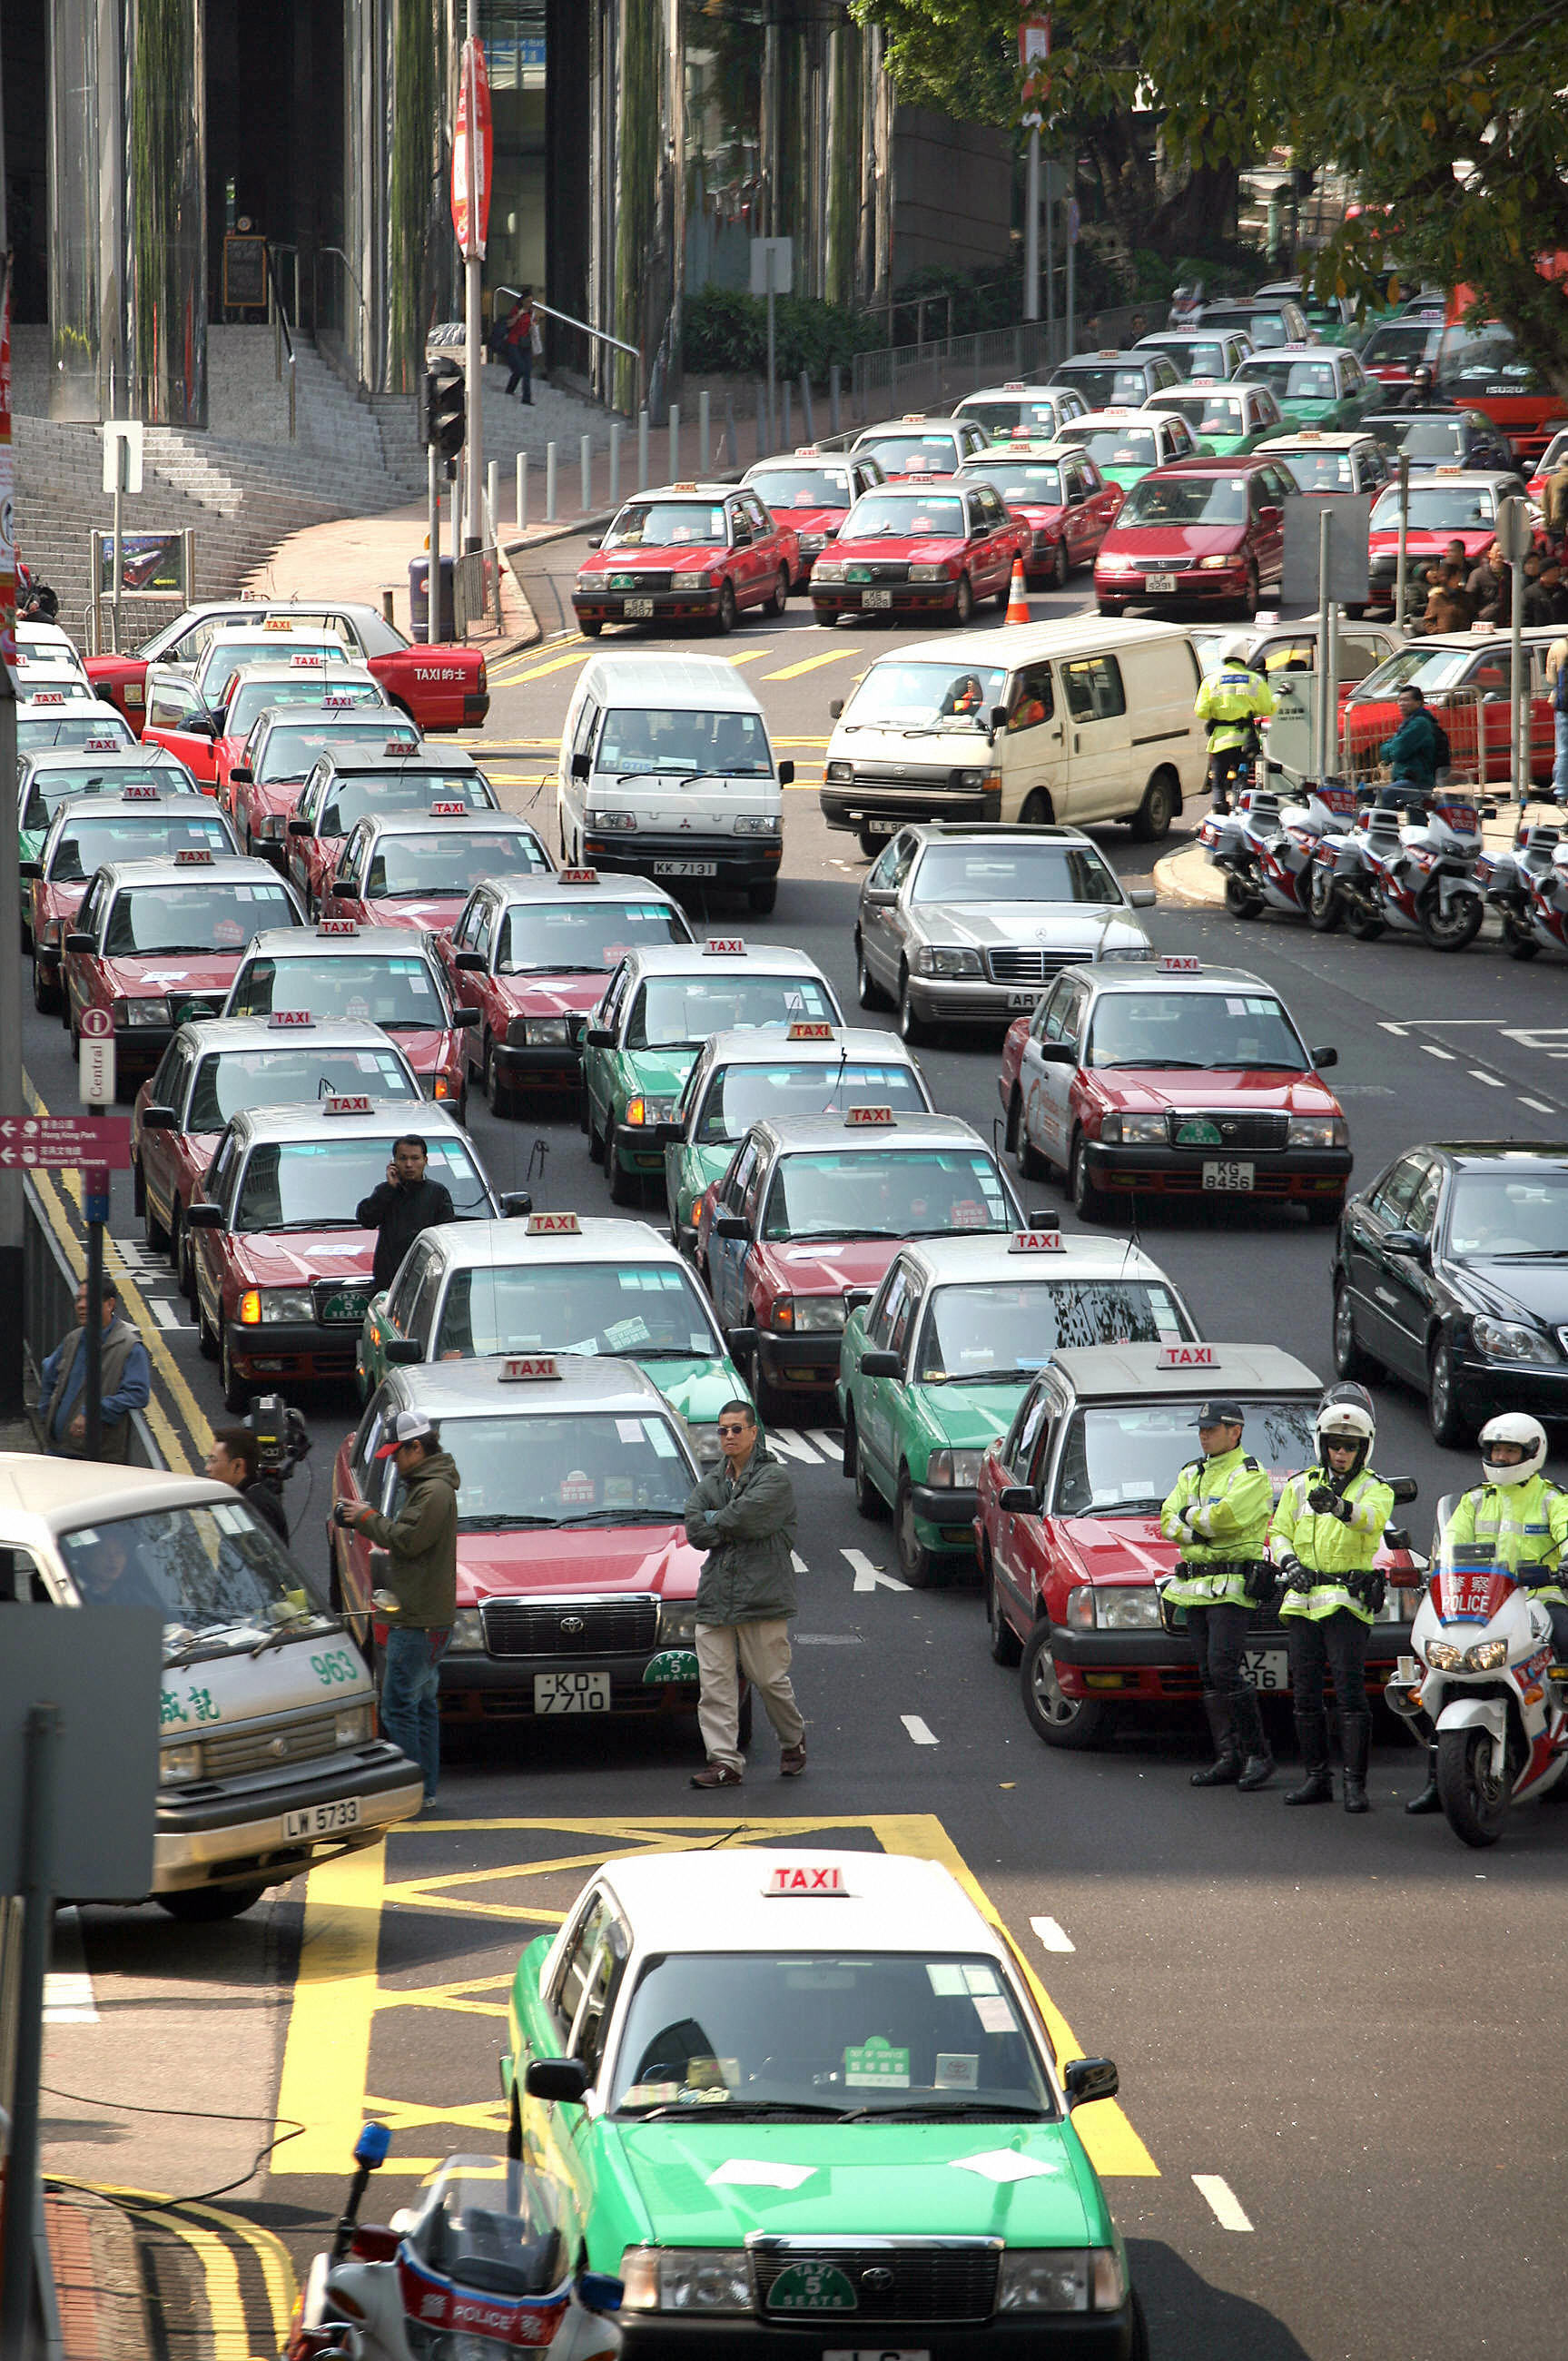 2008年10月中旬，香港近千名的士司机为反对政府预定在11月底实施「短加长减」收费方案，发起慢驶和罢驶行动。